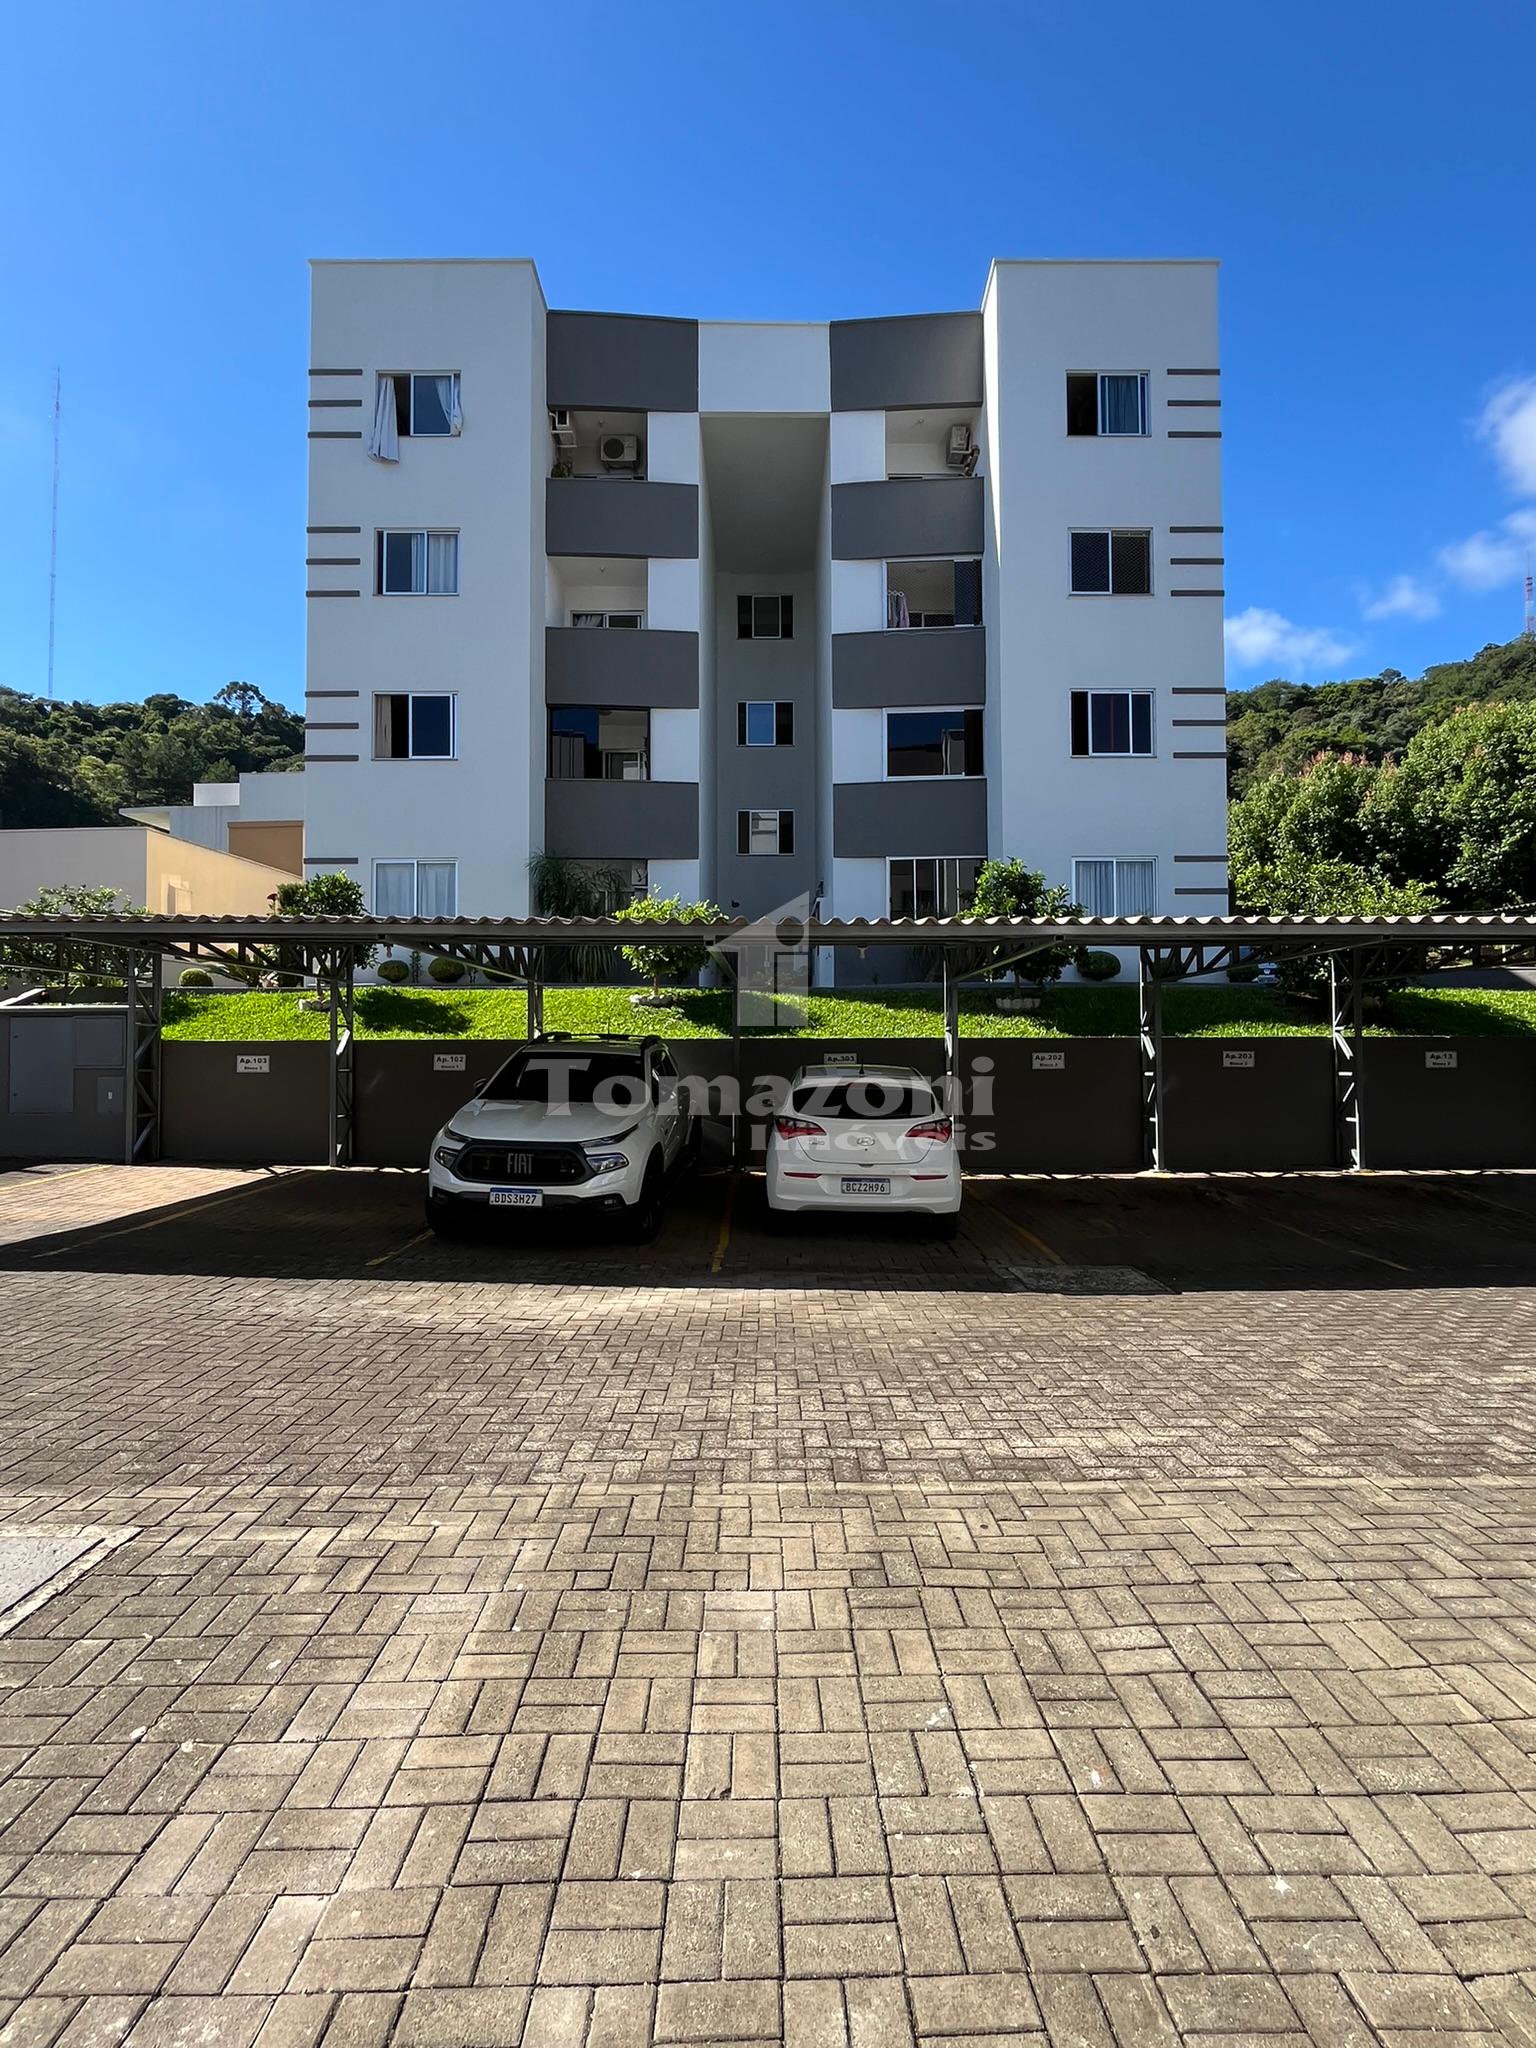 Encantador Apartamento Semi-Mobiliado no Bairro Vila Nova